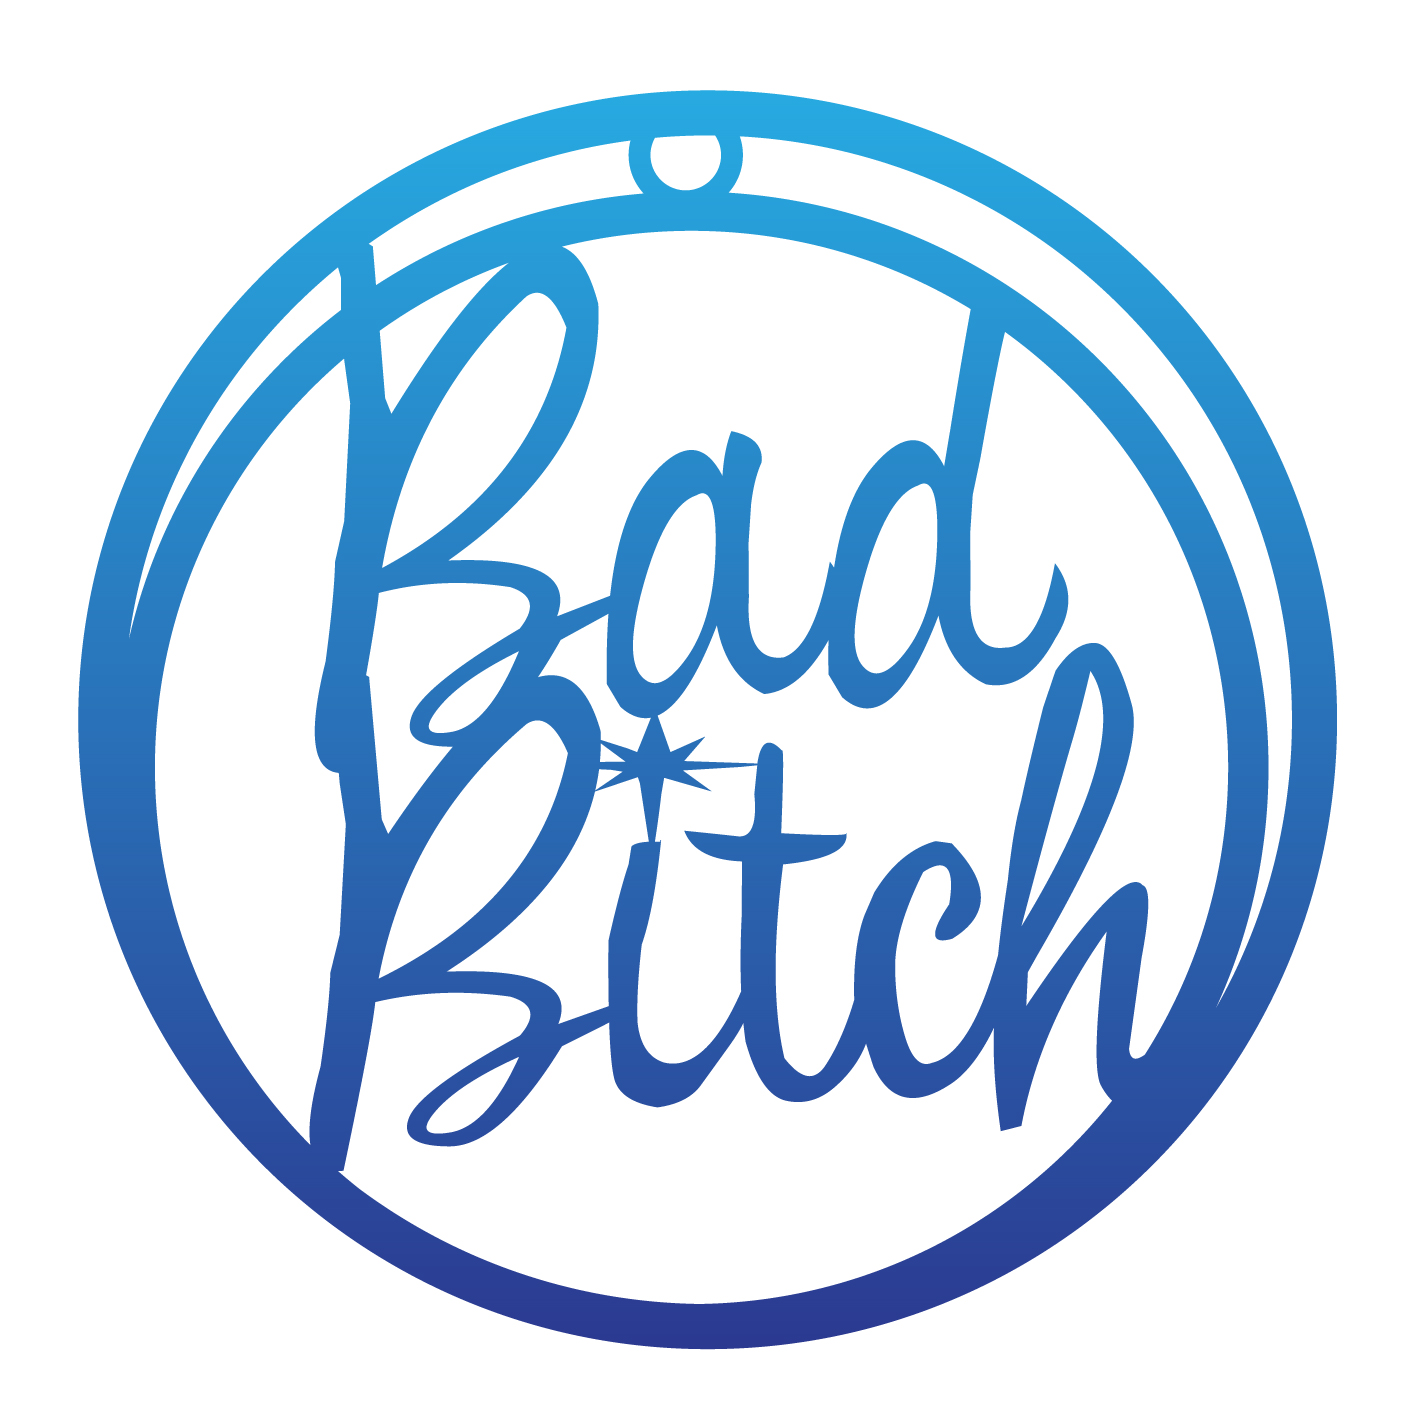 Bad B!#*h